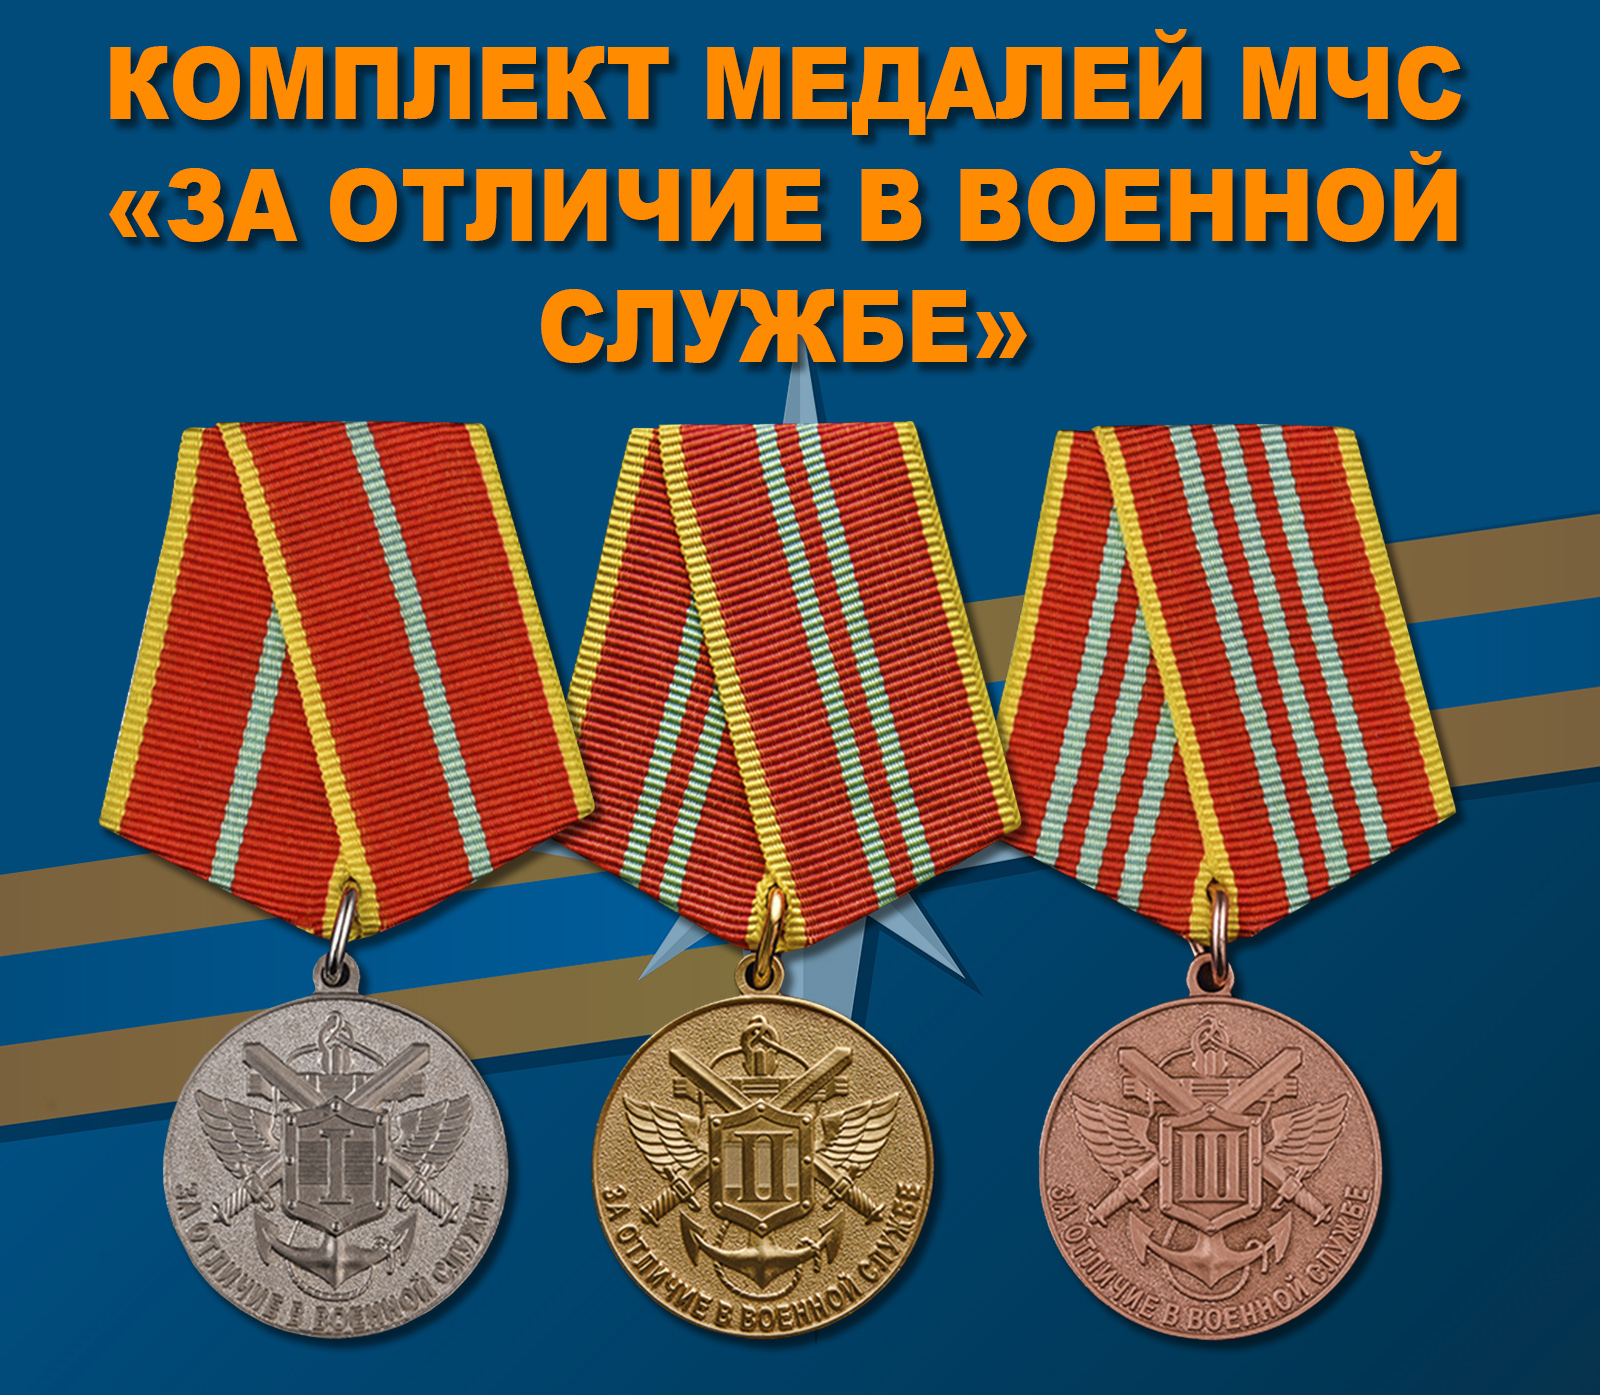 Купить комплект медалей МЧС "За отличие в военной службе"